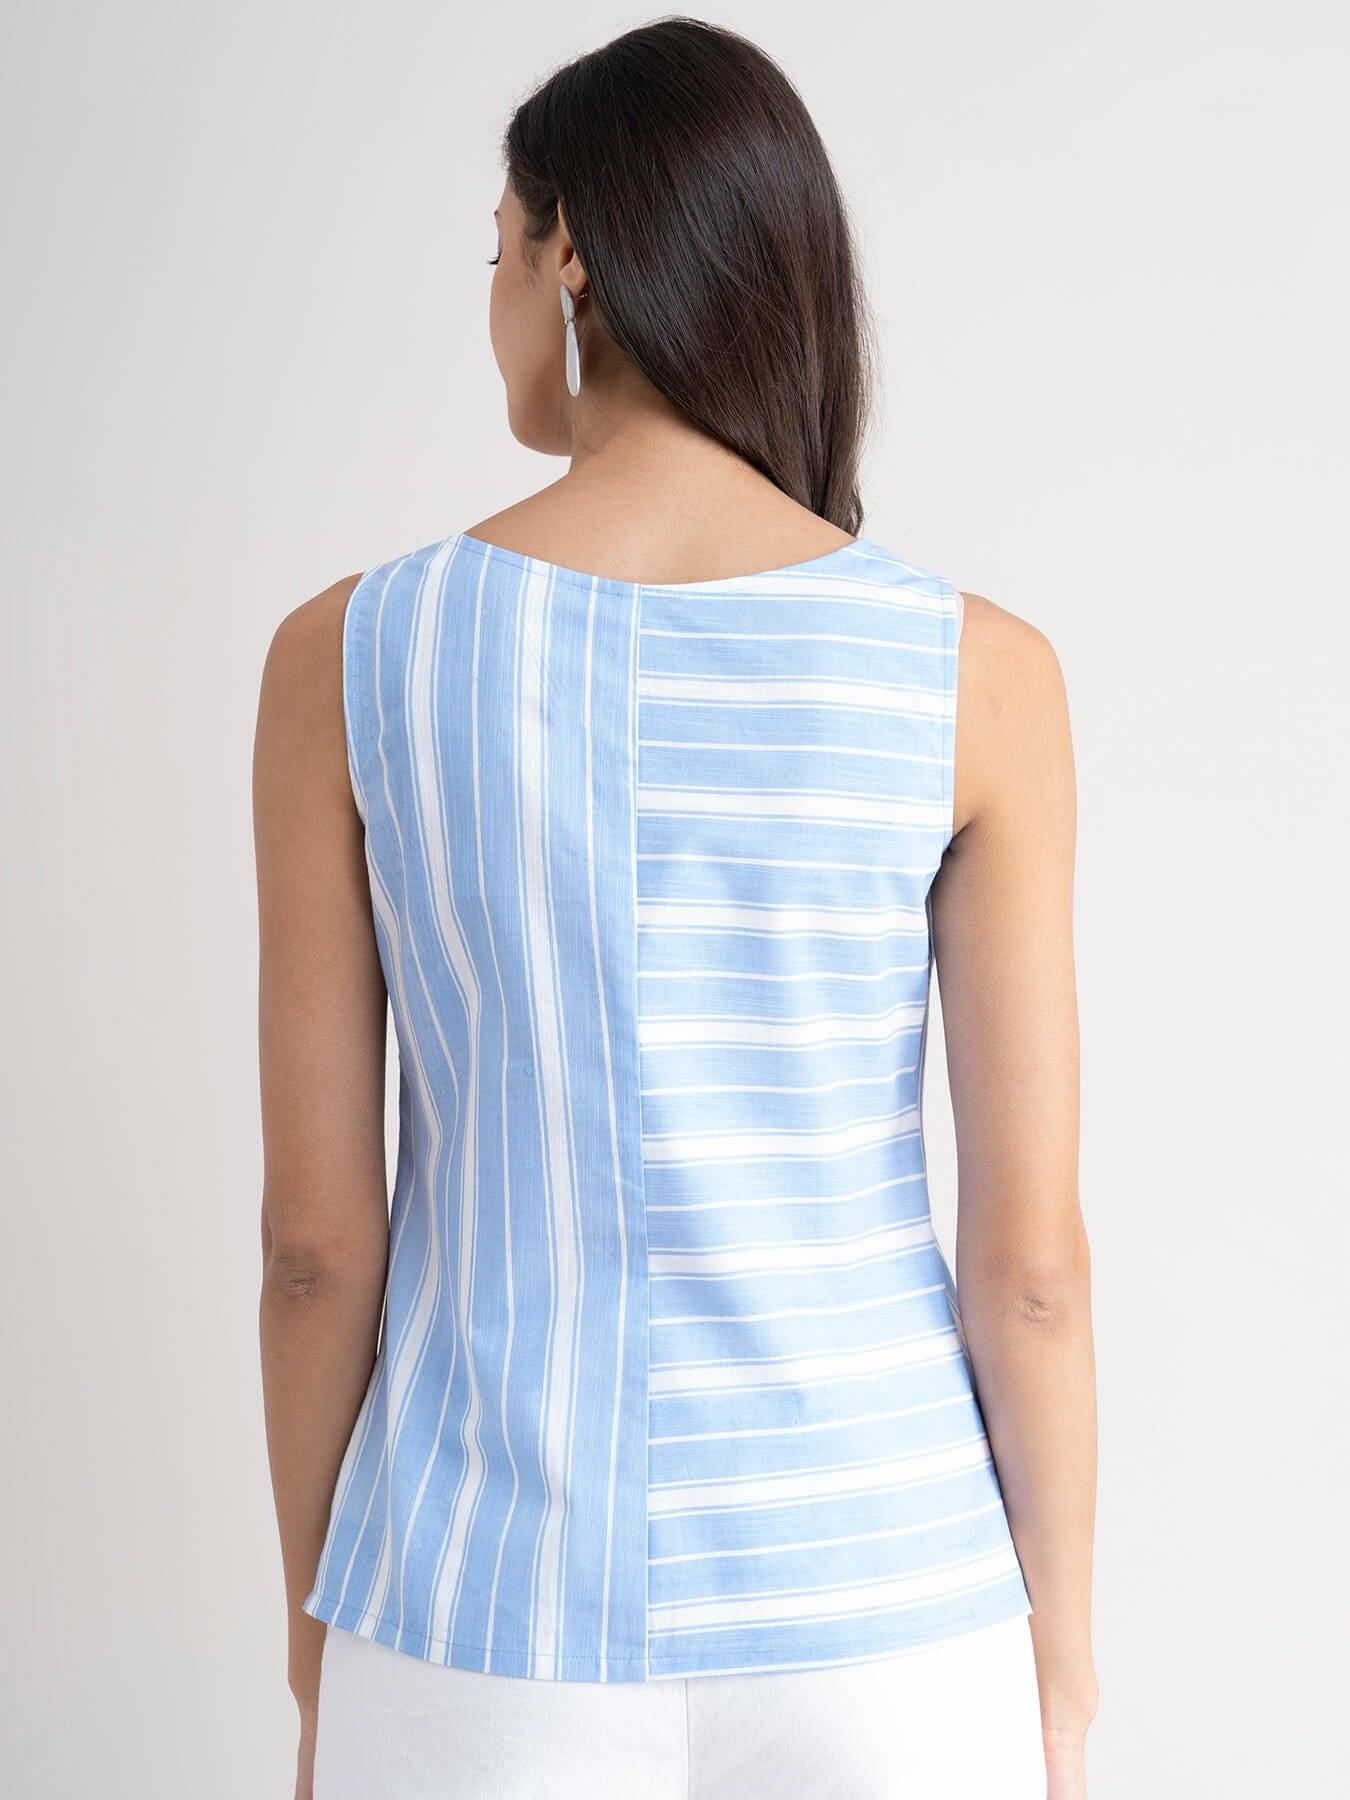 Linen Striped Top - Light Blue| Formal Tops